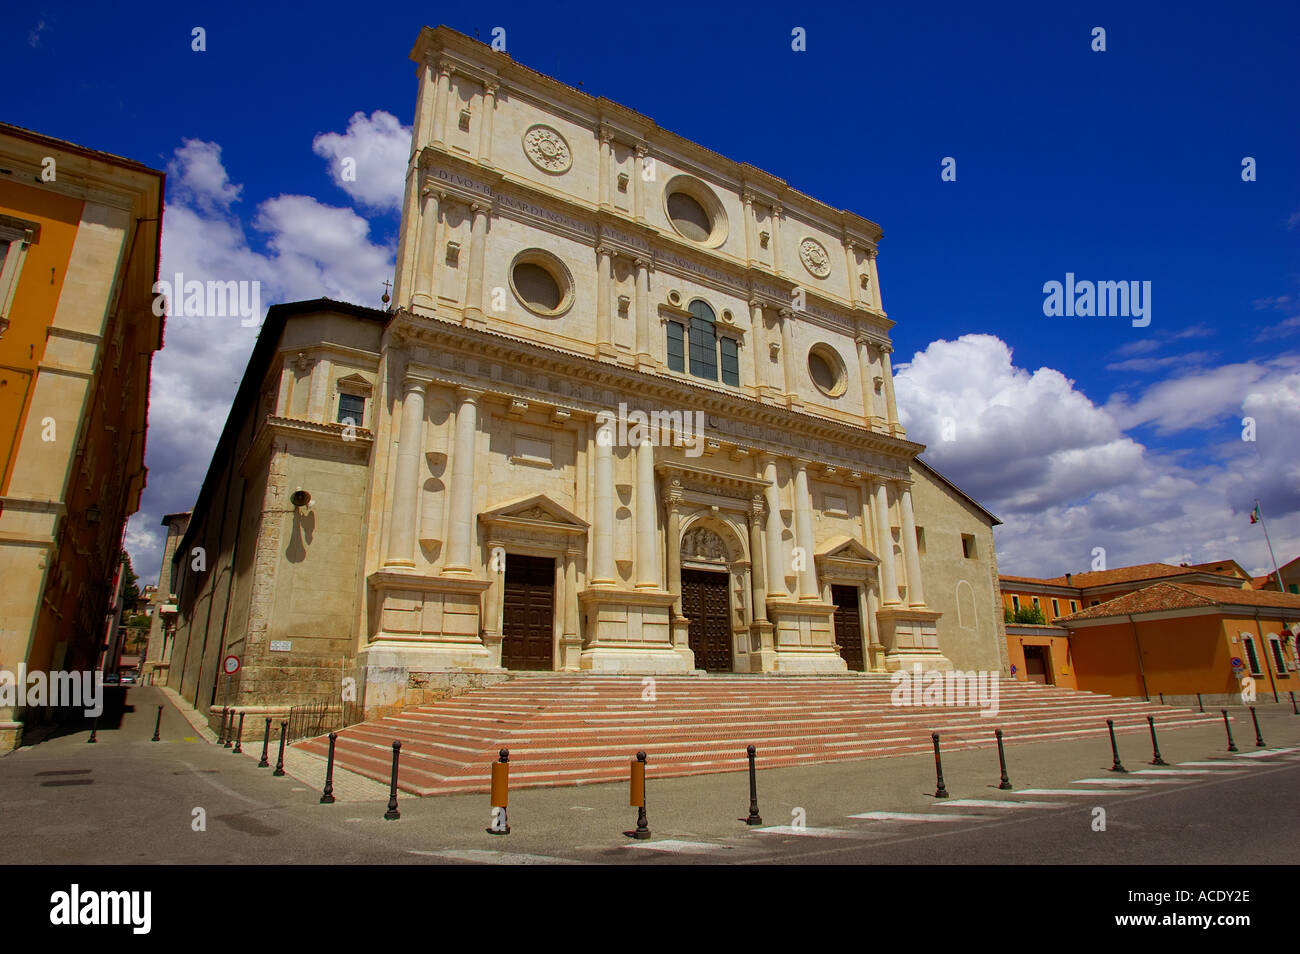 De Zaragose : San Bernardino à L'Aquila Abruzzes Italie Banque D'Images